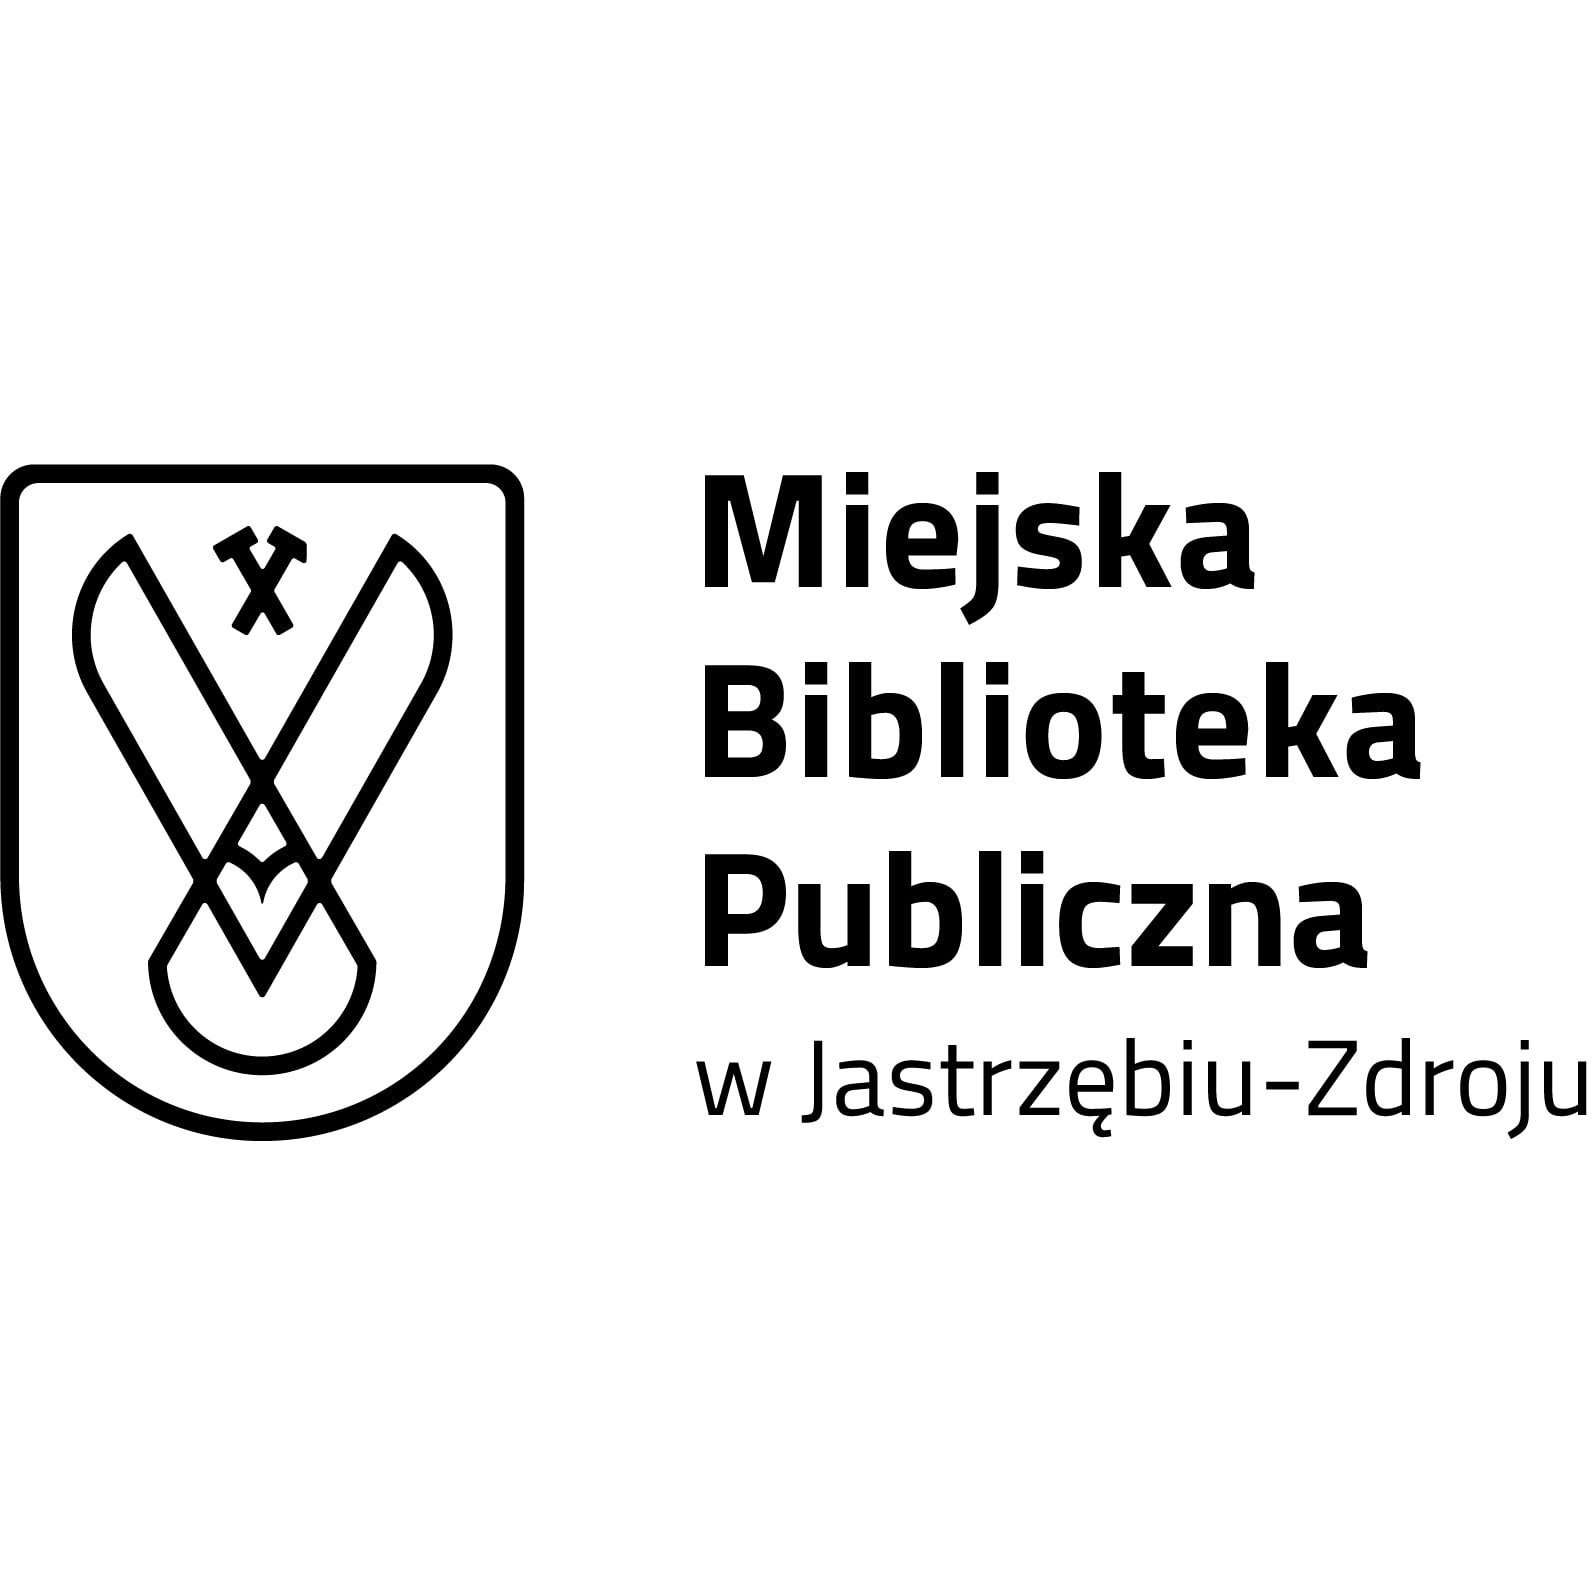 Logo Miejska Biblioteka Publiczna w Jastrzbiu-Zdroju